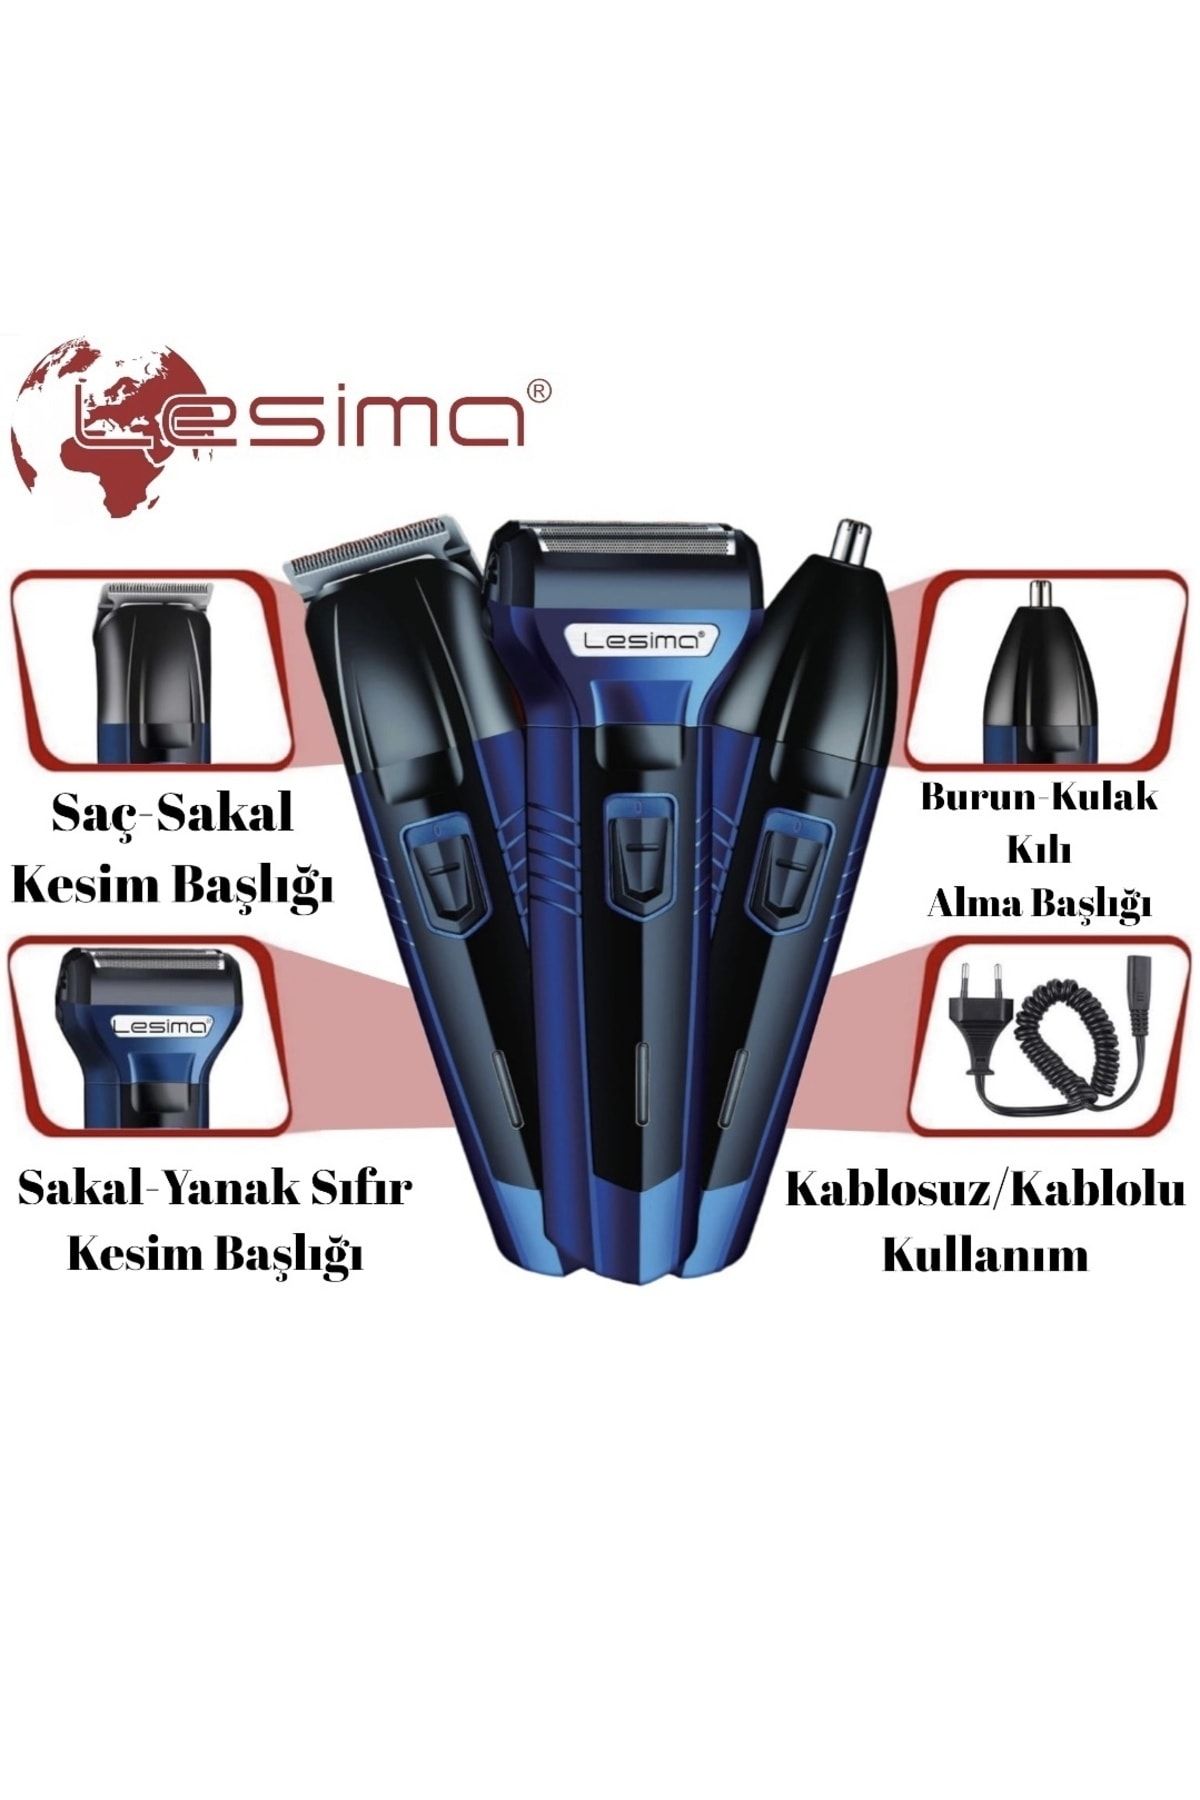 Lesima 3 Başlıklı Saç Sakal Yanak Burun Ense Tıraş Makinesi Traş Bakım Set